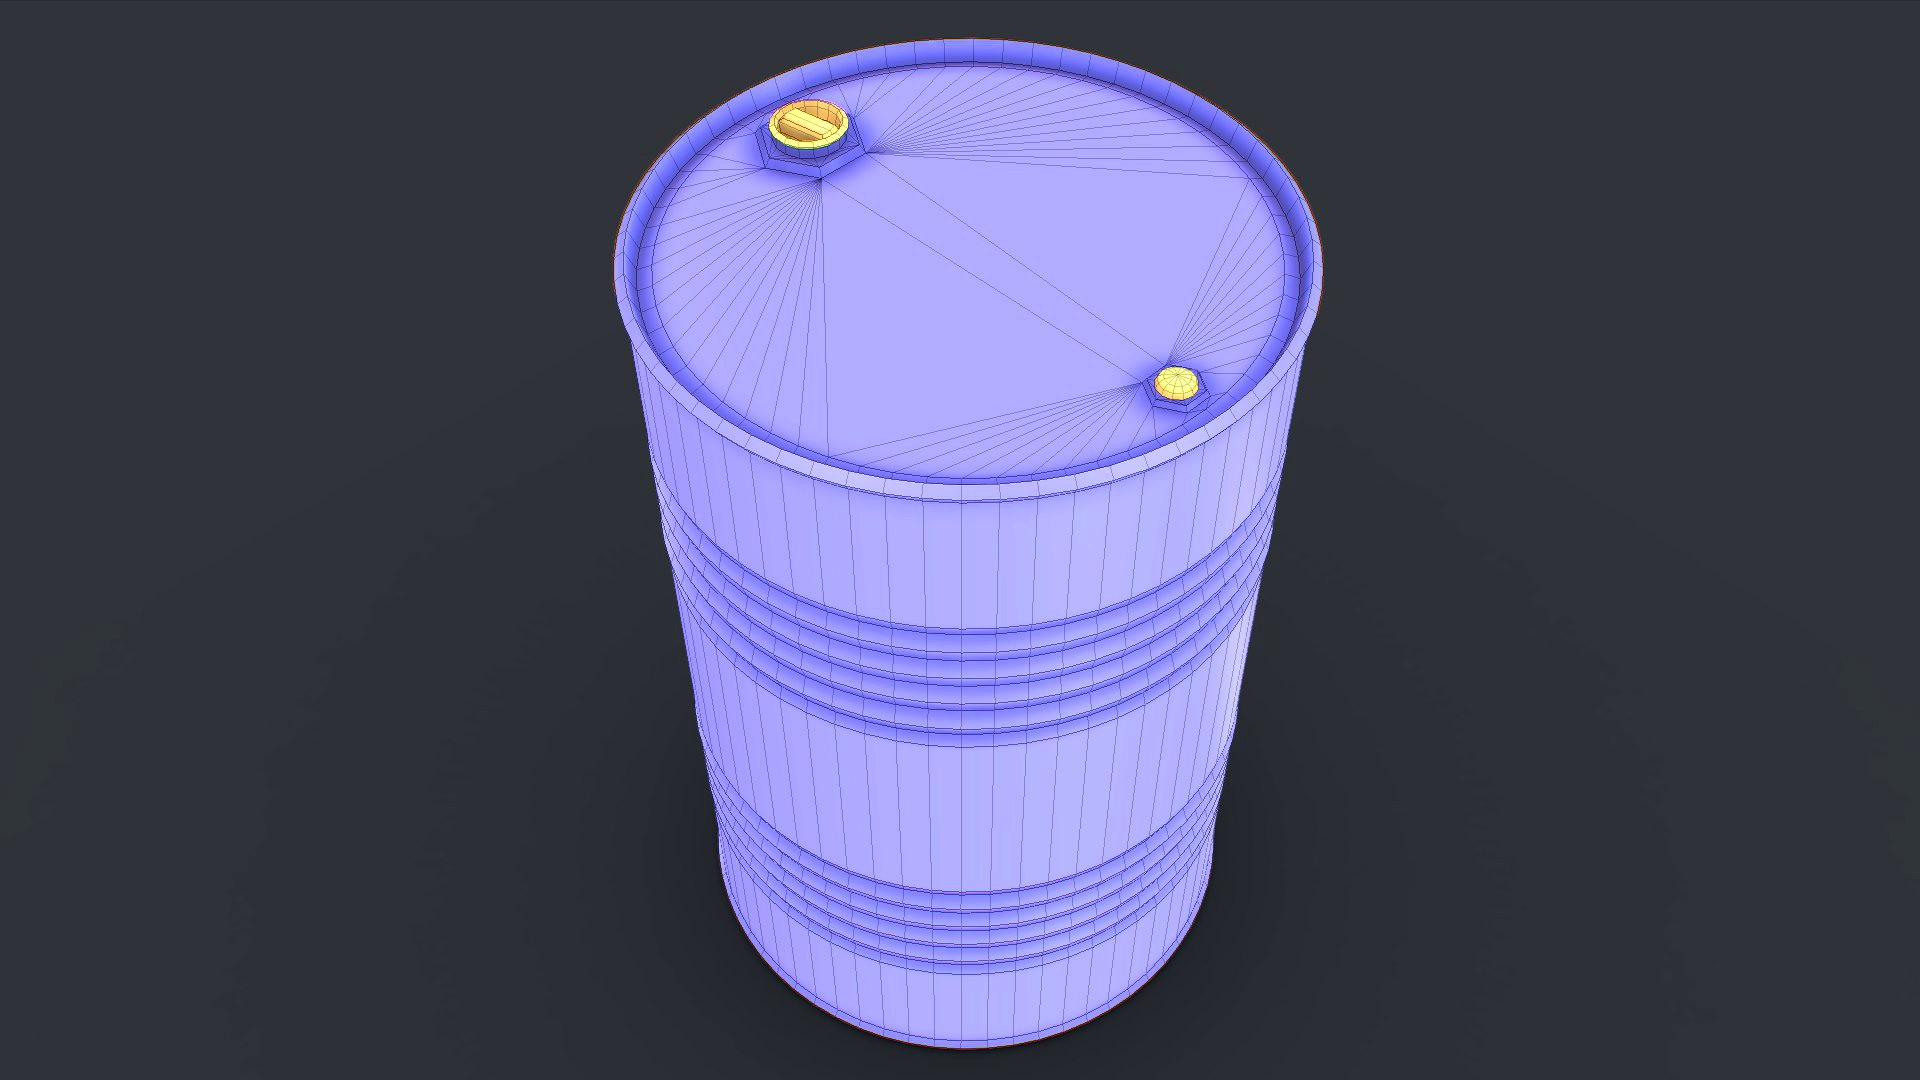 Barrel with golden ratio